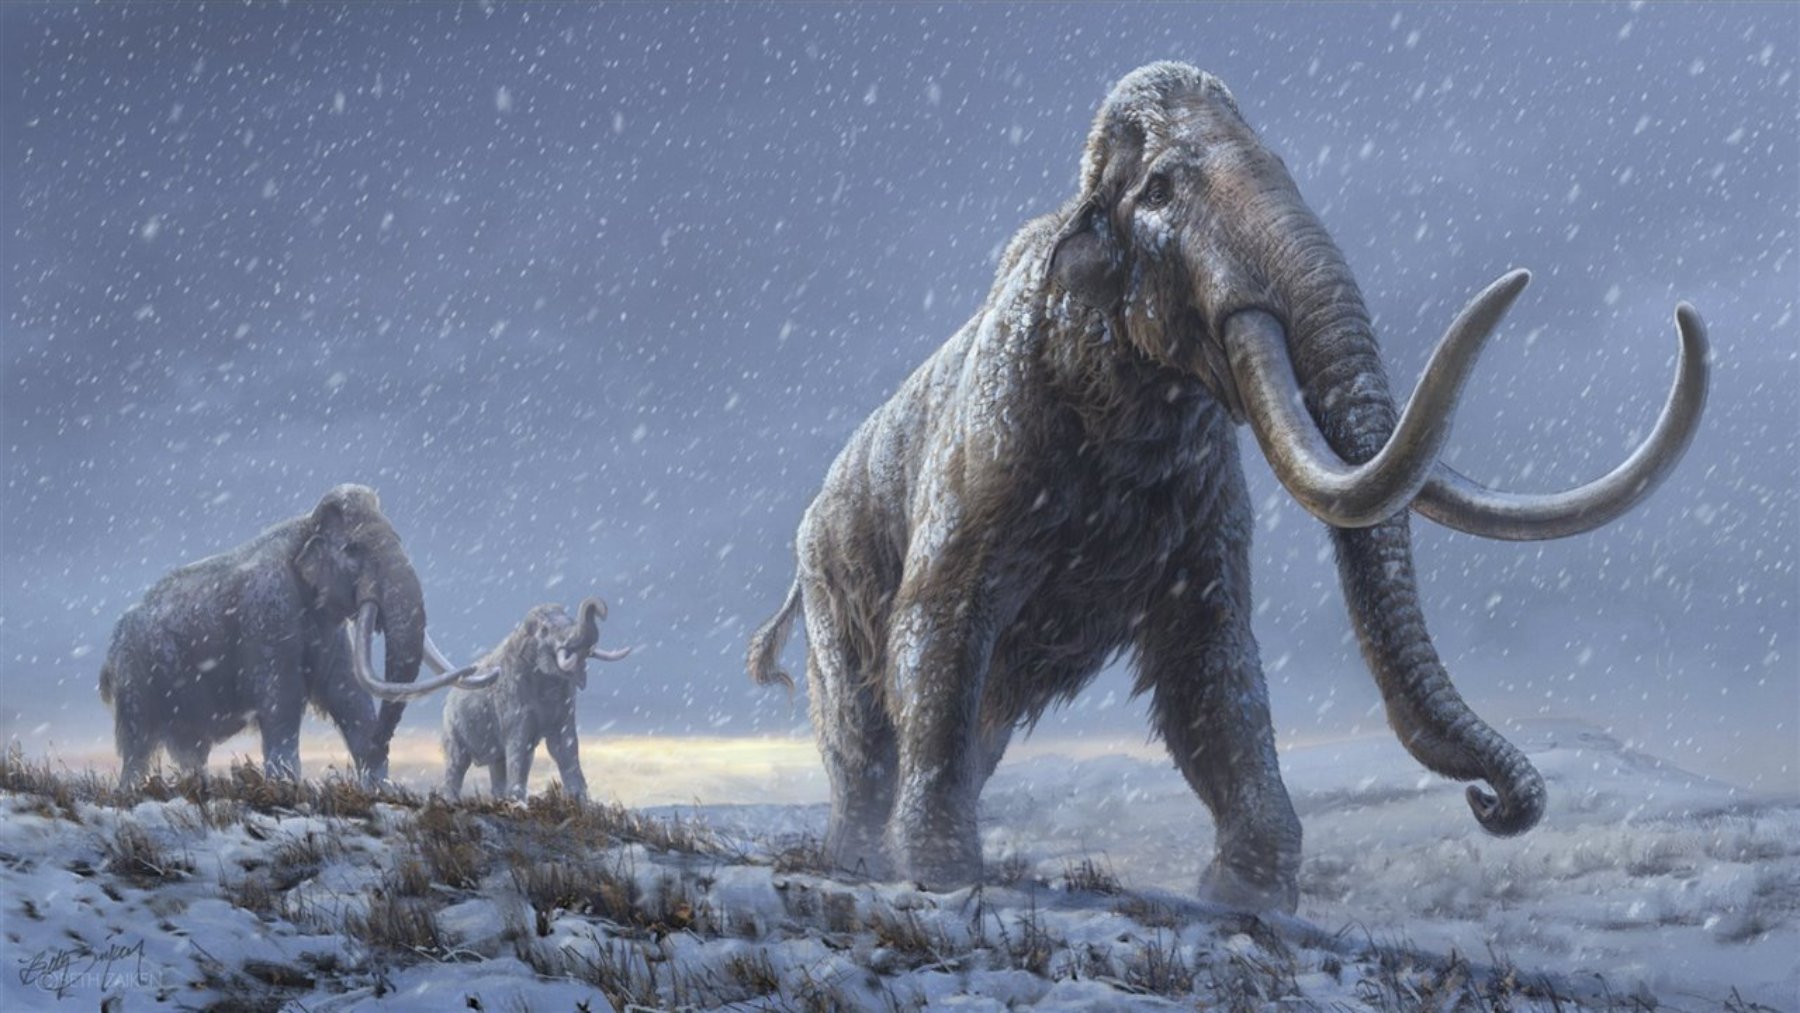 La ciencia avanza a tal velocidad que quizás un animal que estaba extinguido de la faz de la Tierra como el mamut ‘resucite’